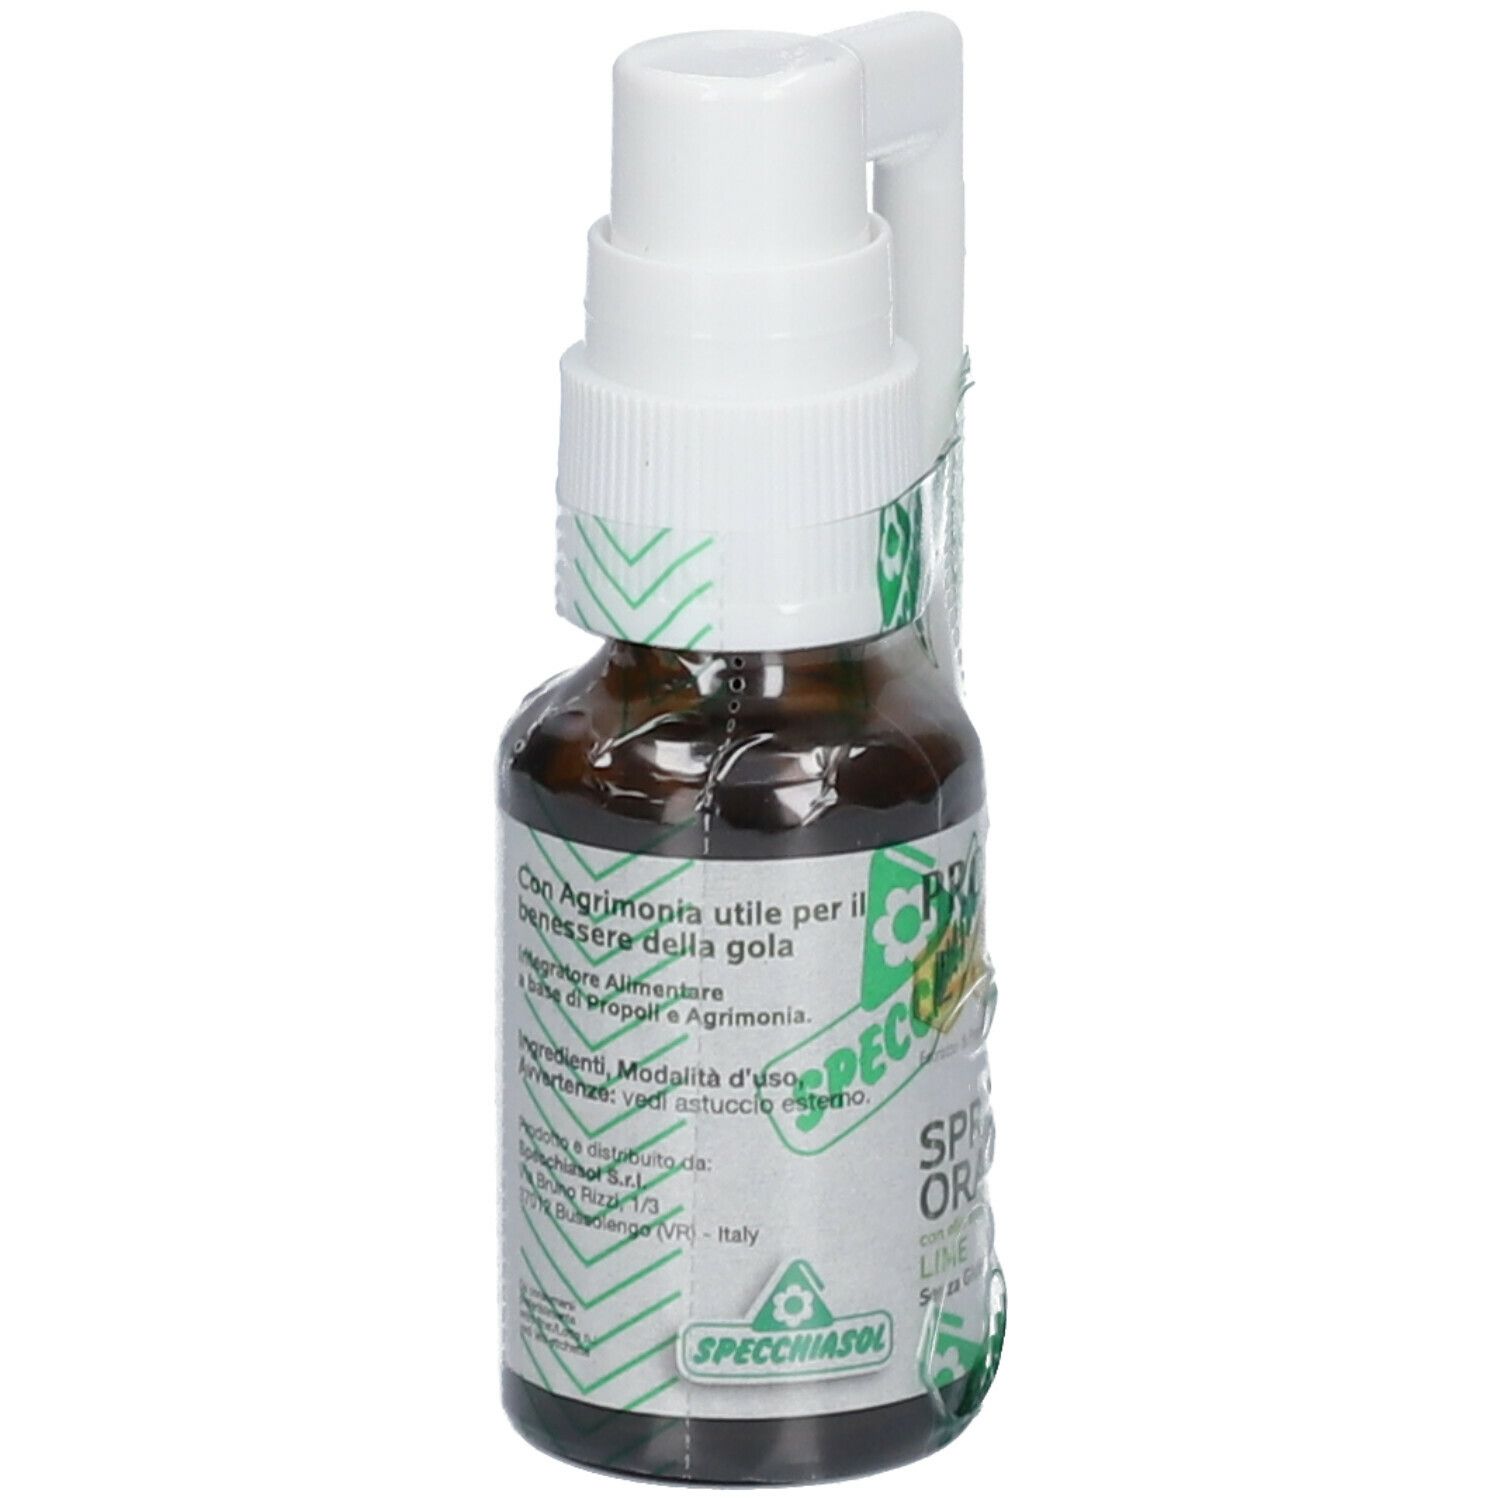 Epid® Spray Orale Con Agrimonia Gusto Fresco Lime